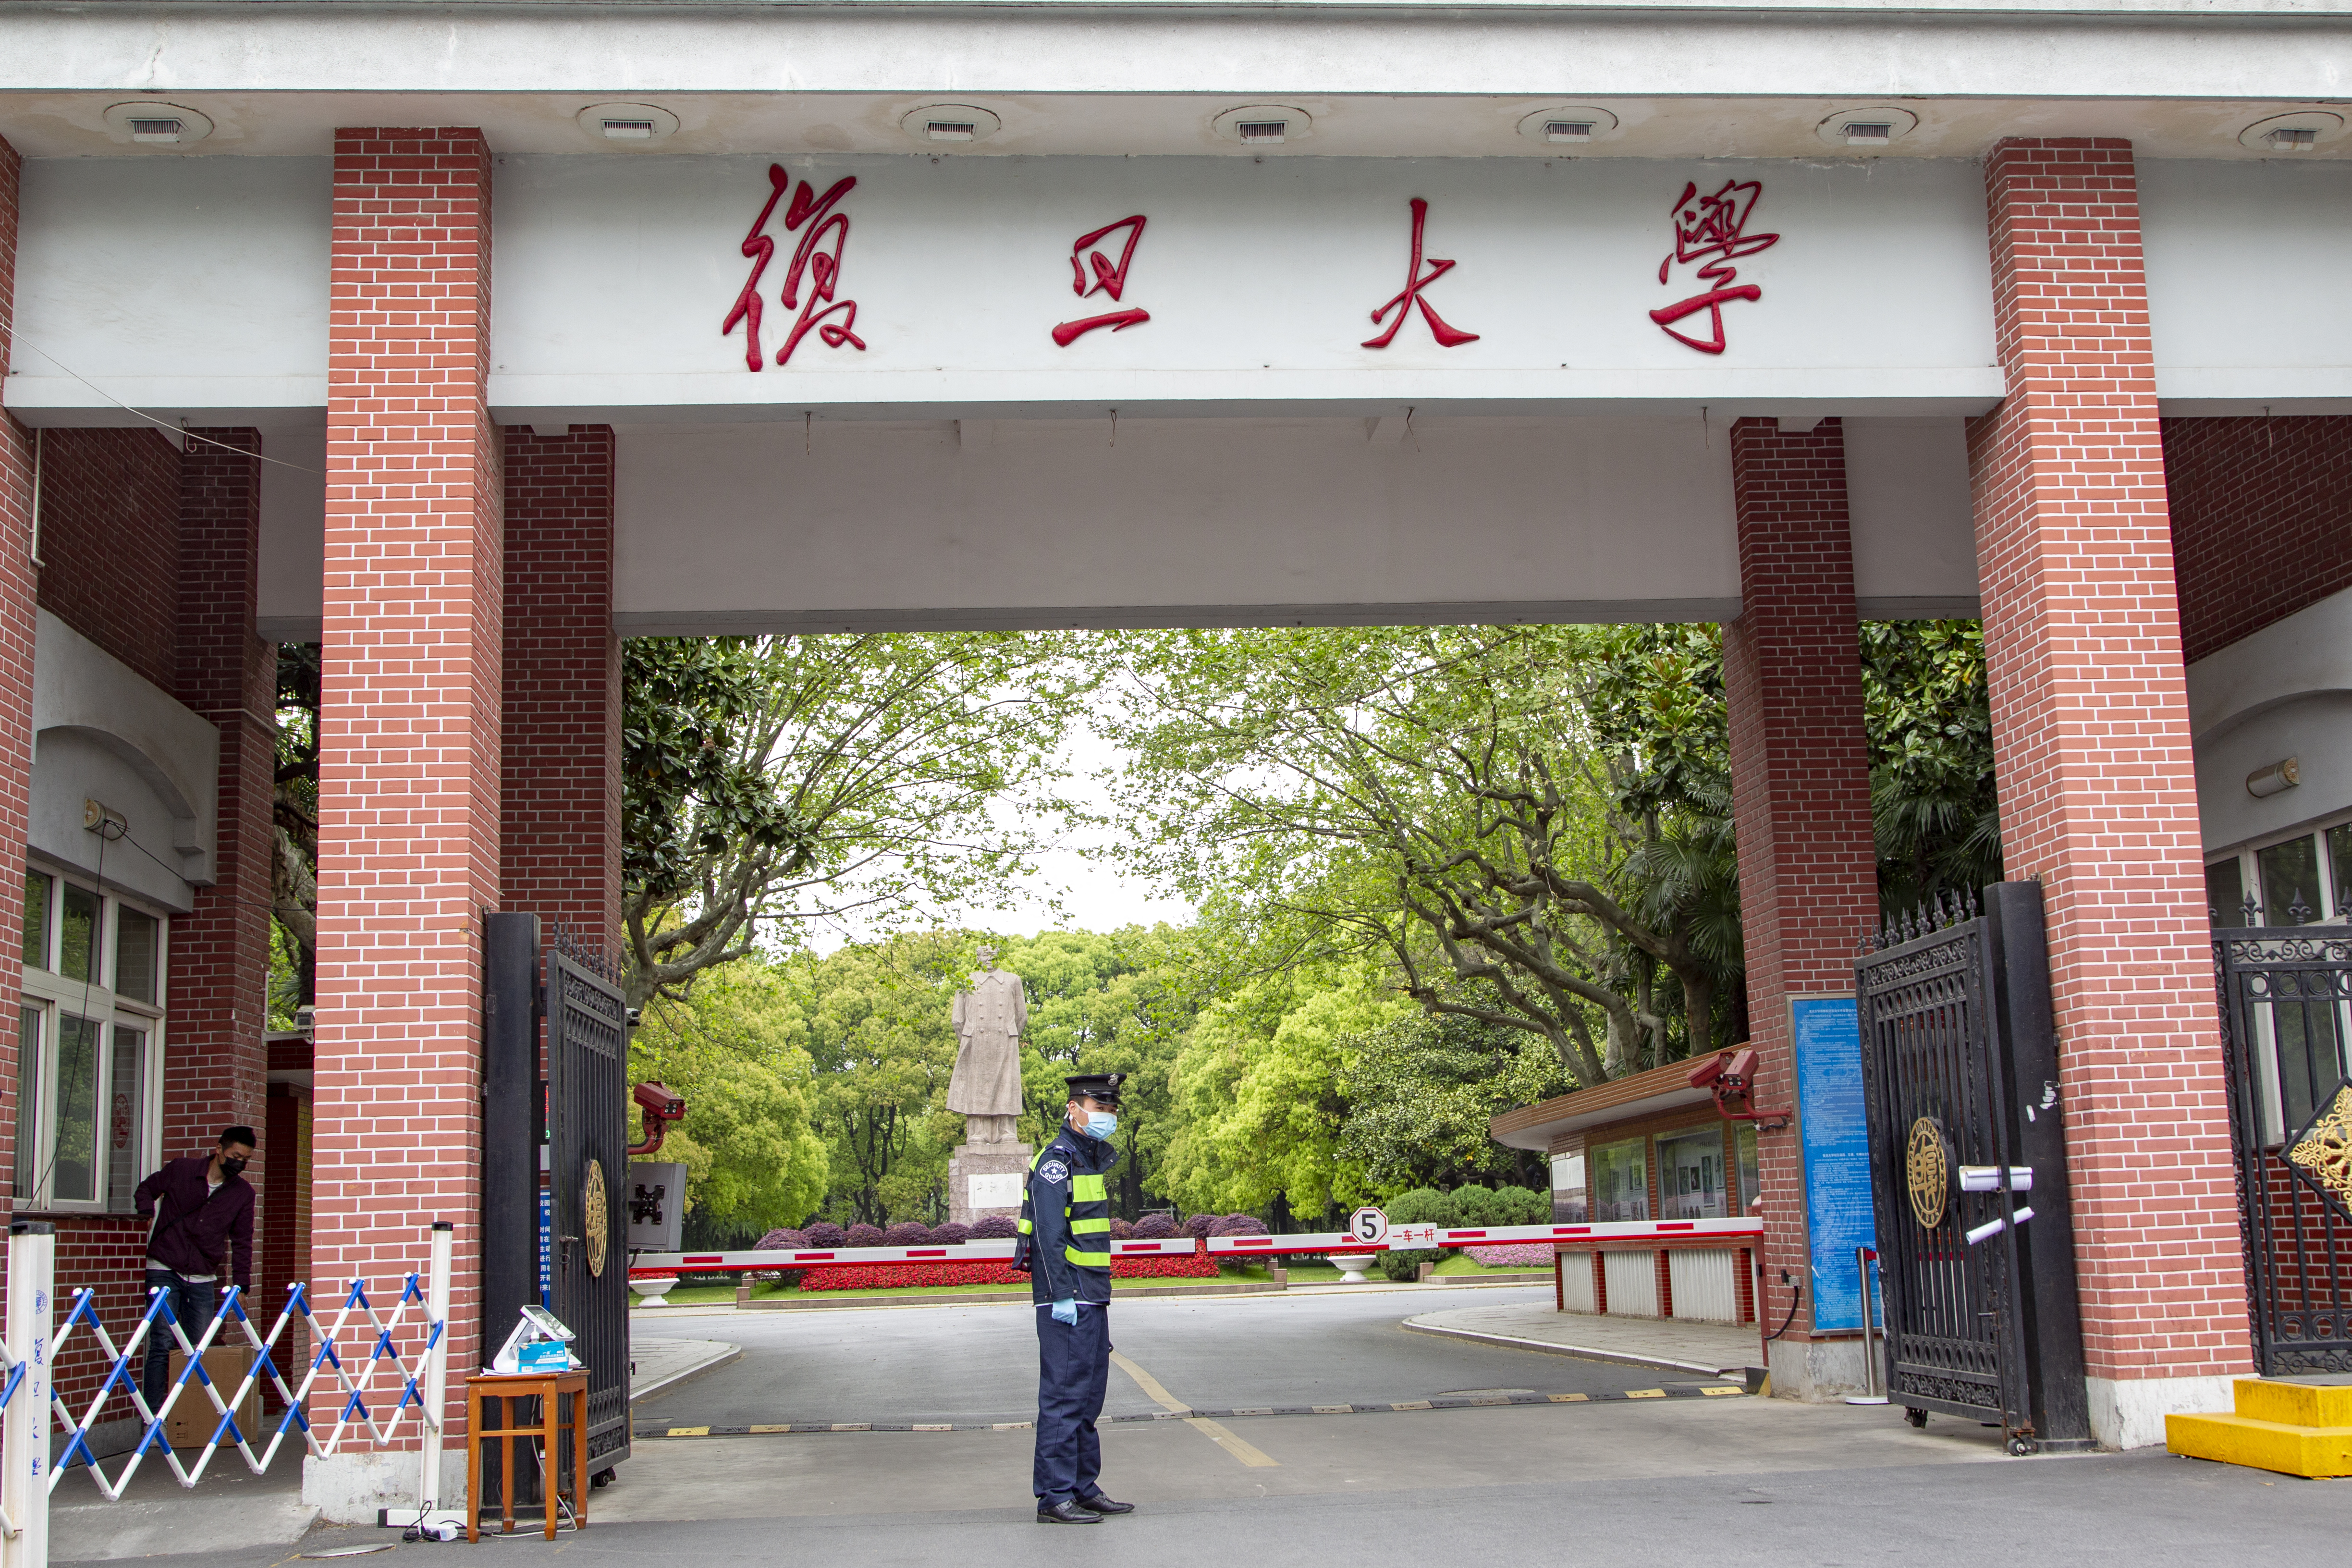 Teljes stratégiai és együttműködési partneri kapcsolatot alakított a Fudan Egyetem a kínai állampárti propagandával